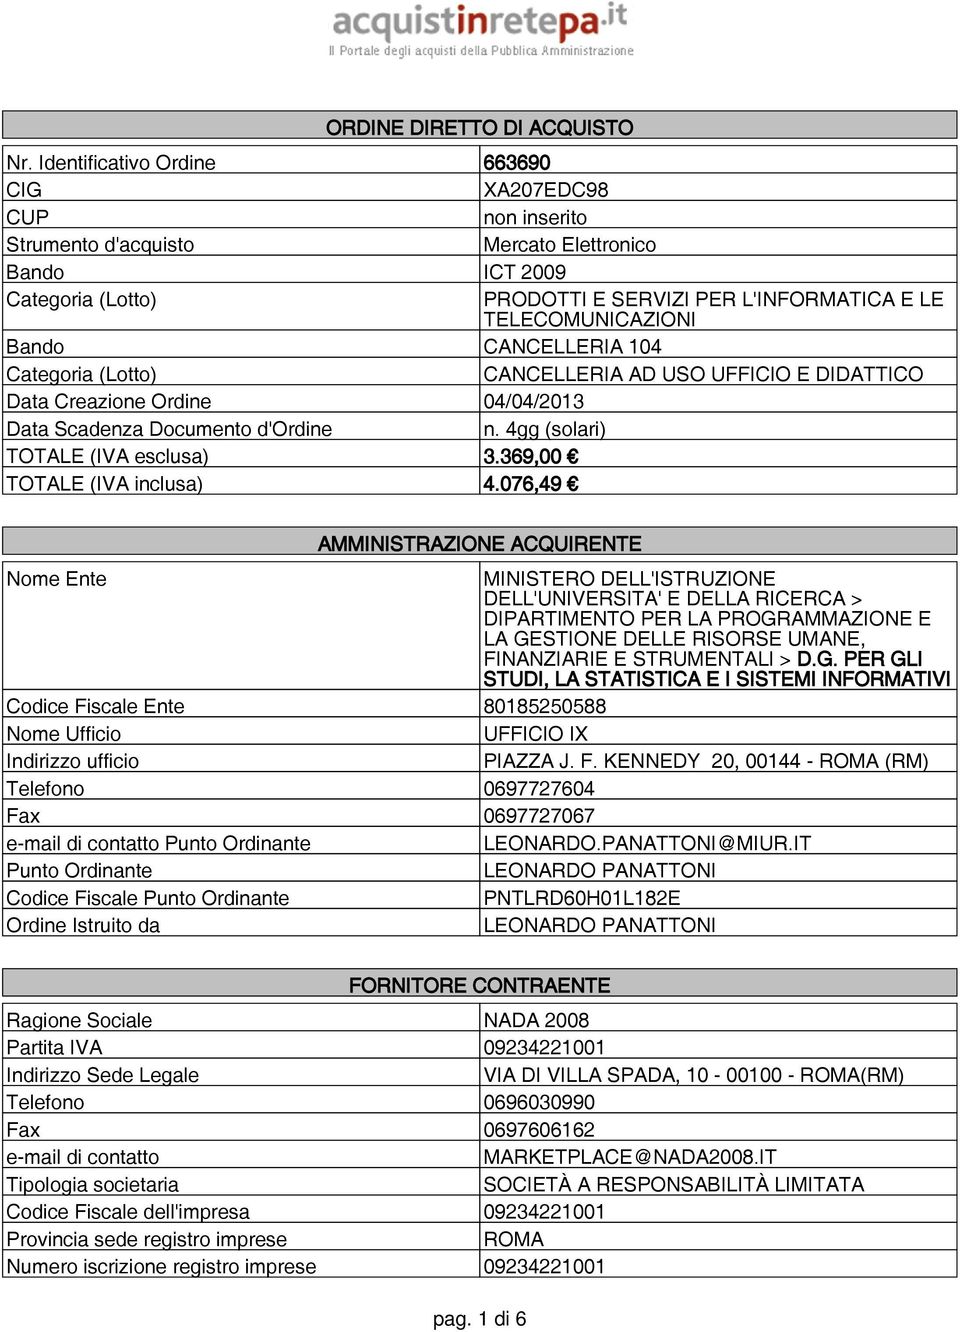 Bando CANCELLERIA 104 Categoria (Lotto) CANCELLERIA AD USO UFFICIO E DIDATTICO Data Creazione Ordine 04/04/2013 Data Scadenza Documento d'ordine n. 4gg (solari) TOTALE (IVA esclusa) 3.